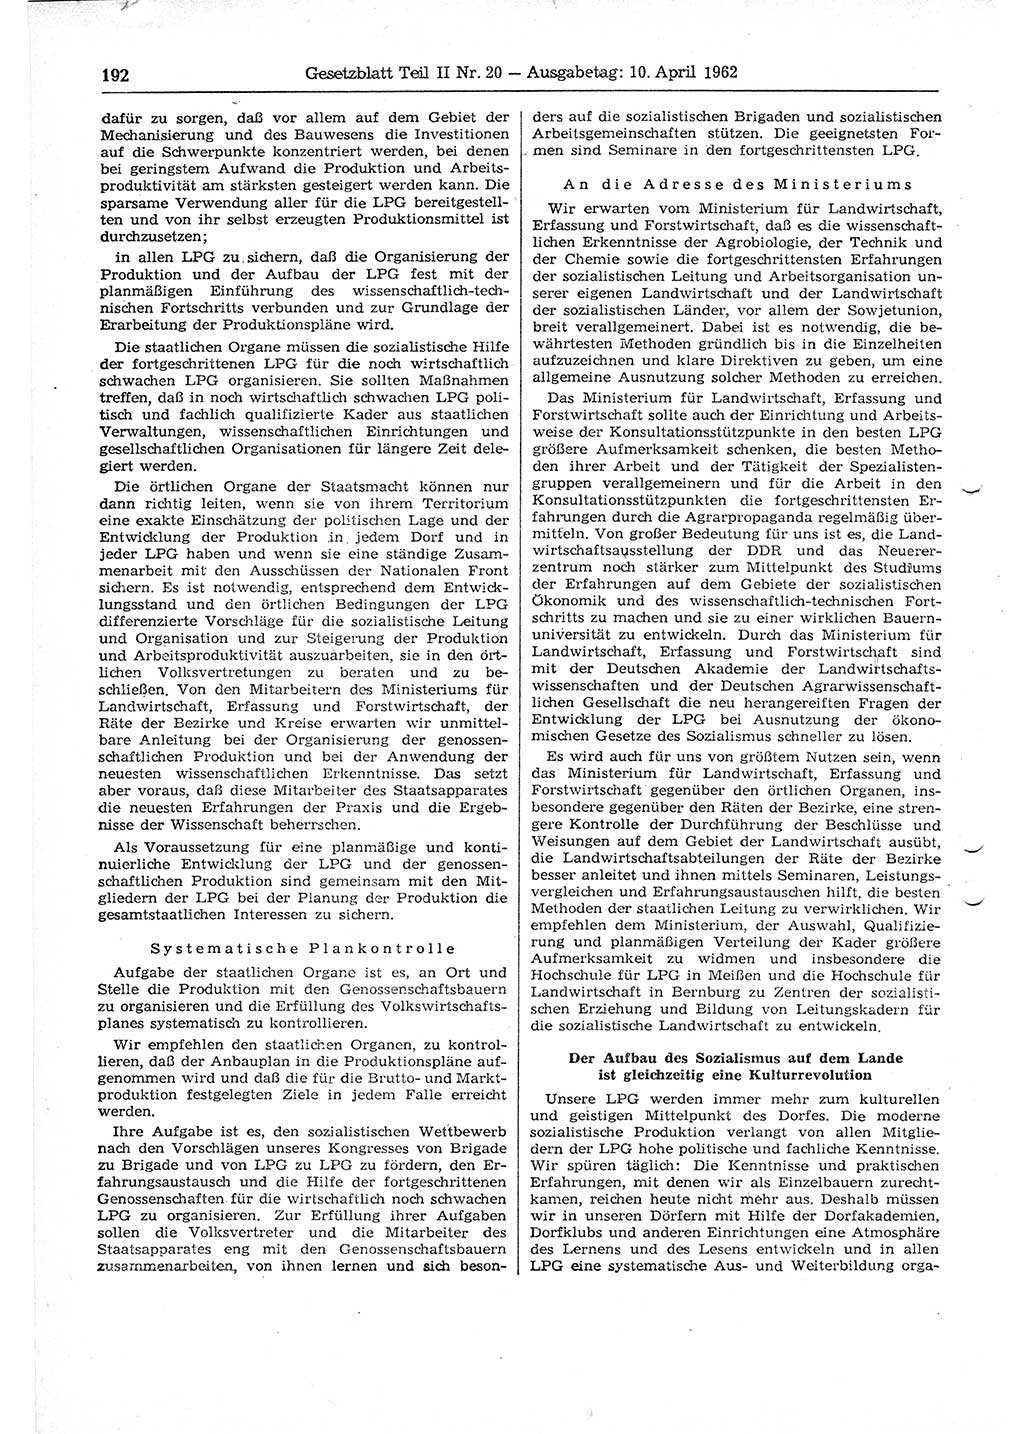 Gesetzblatt (GBl.) der Deutschen Demokratischen Republik (DDR) Teil ⅠⅠ 1962, Seite 192 (GBl. DDR ⅠⅠ 1962, S. 192)